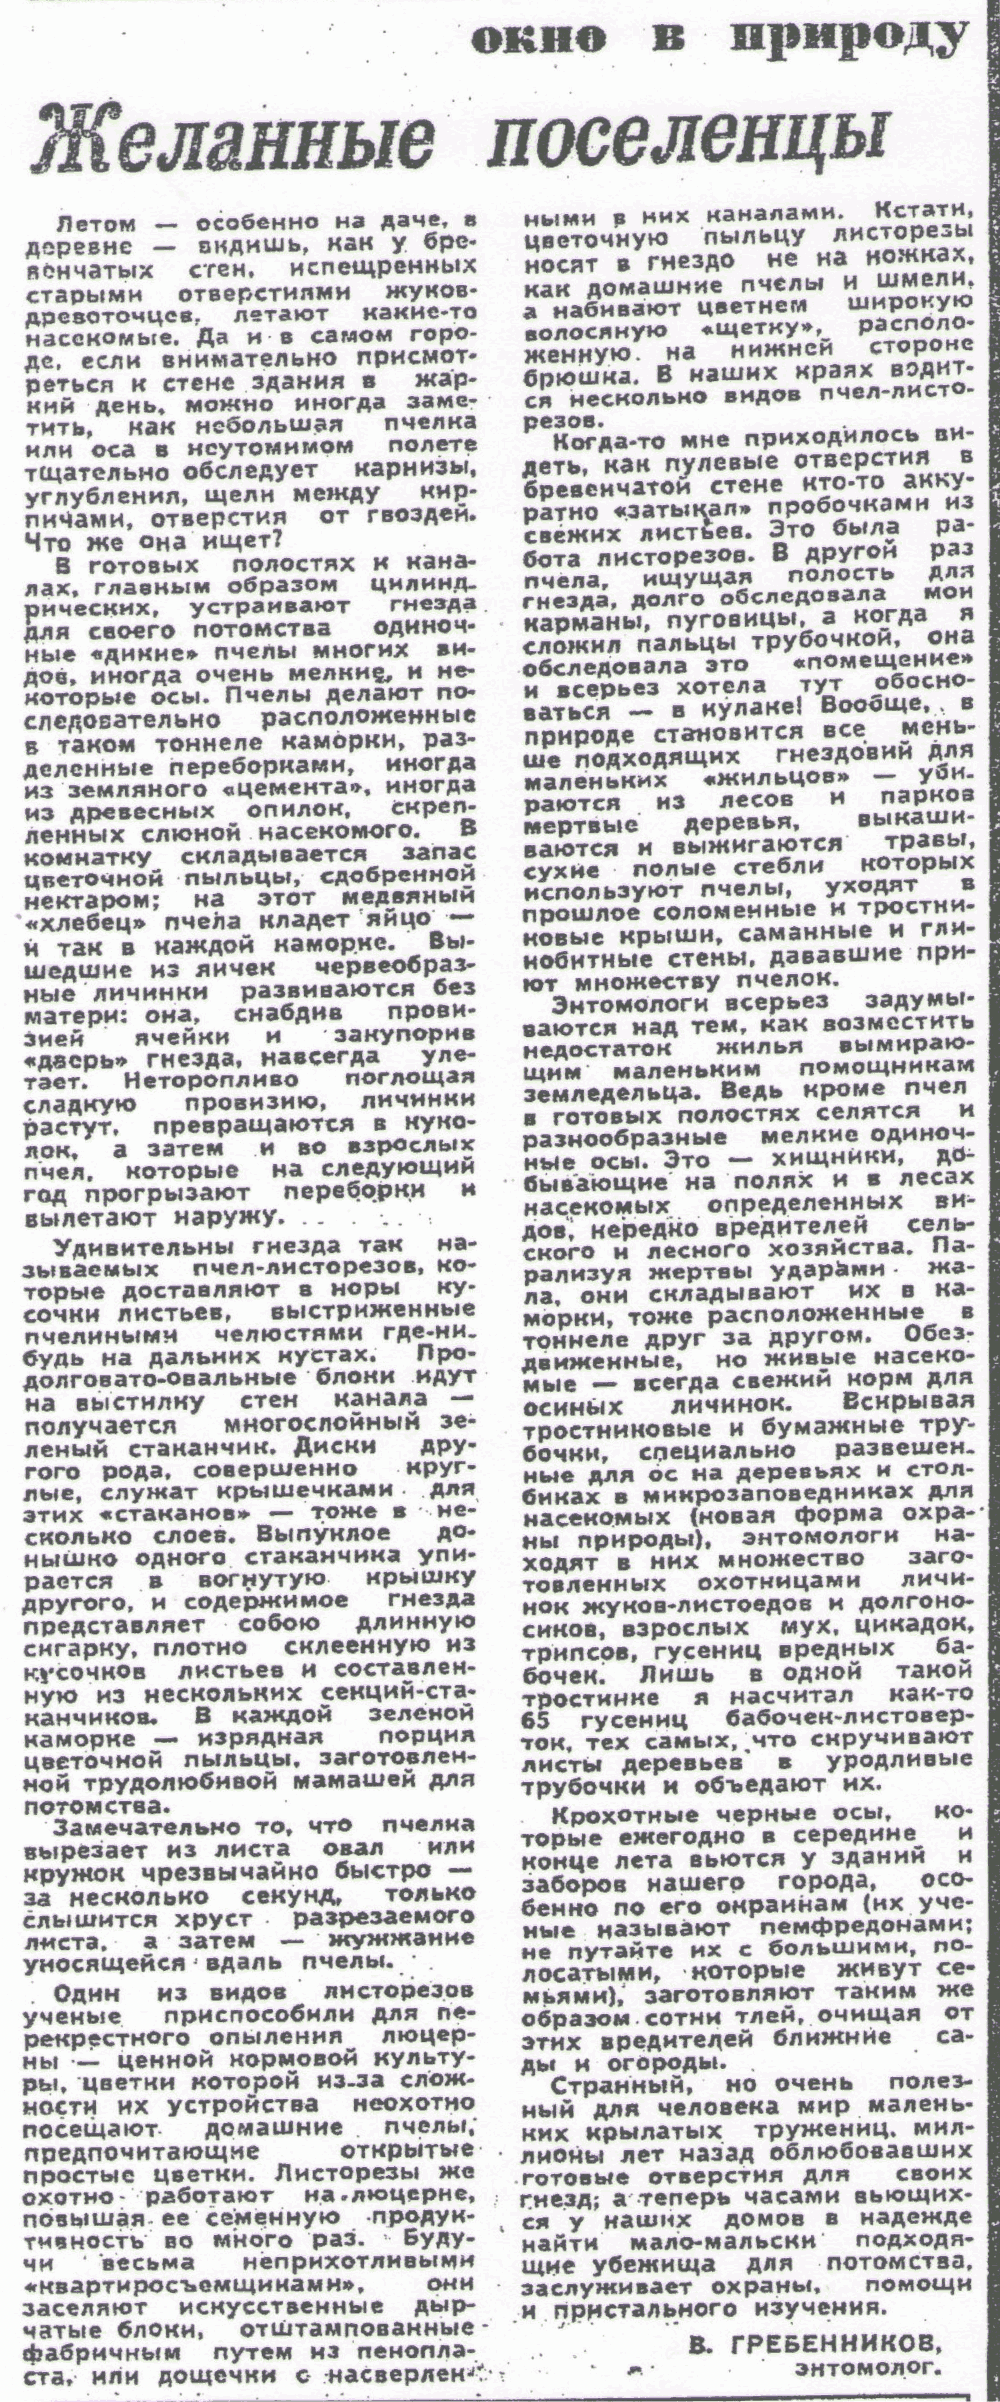 Желанные поселенцы. В.С. Гребенников. Вечерний Новосибирск, 19.07.1978.